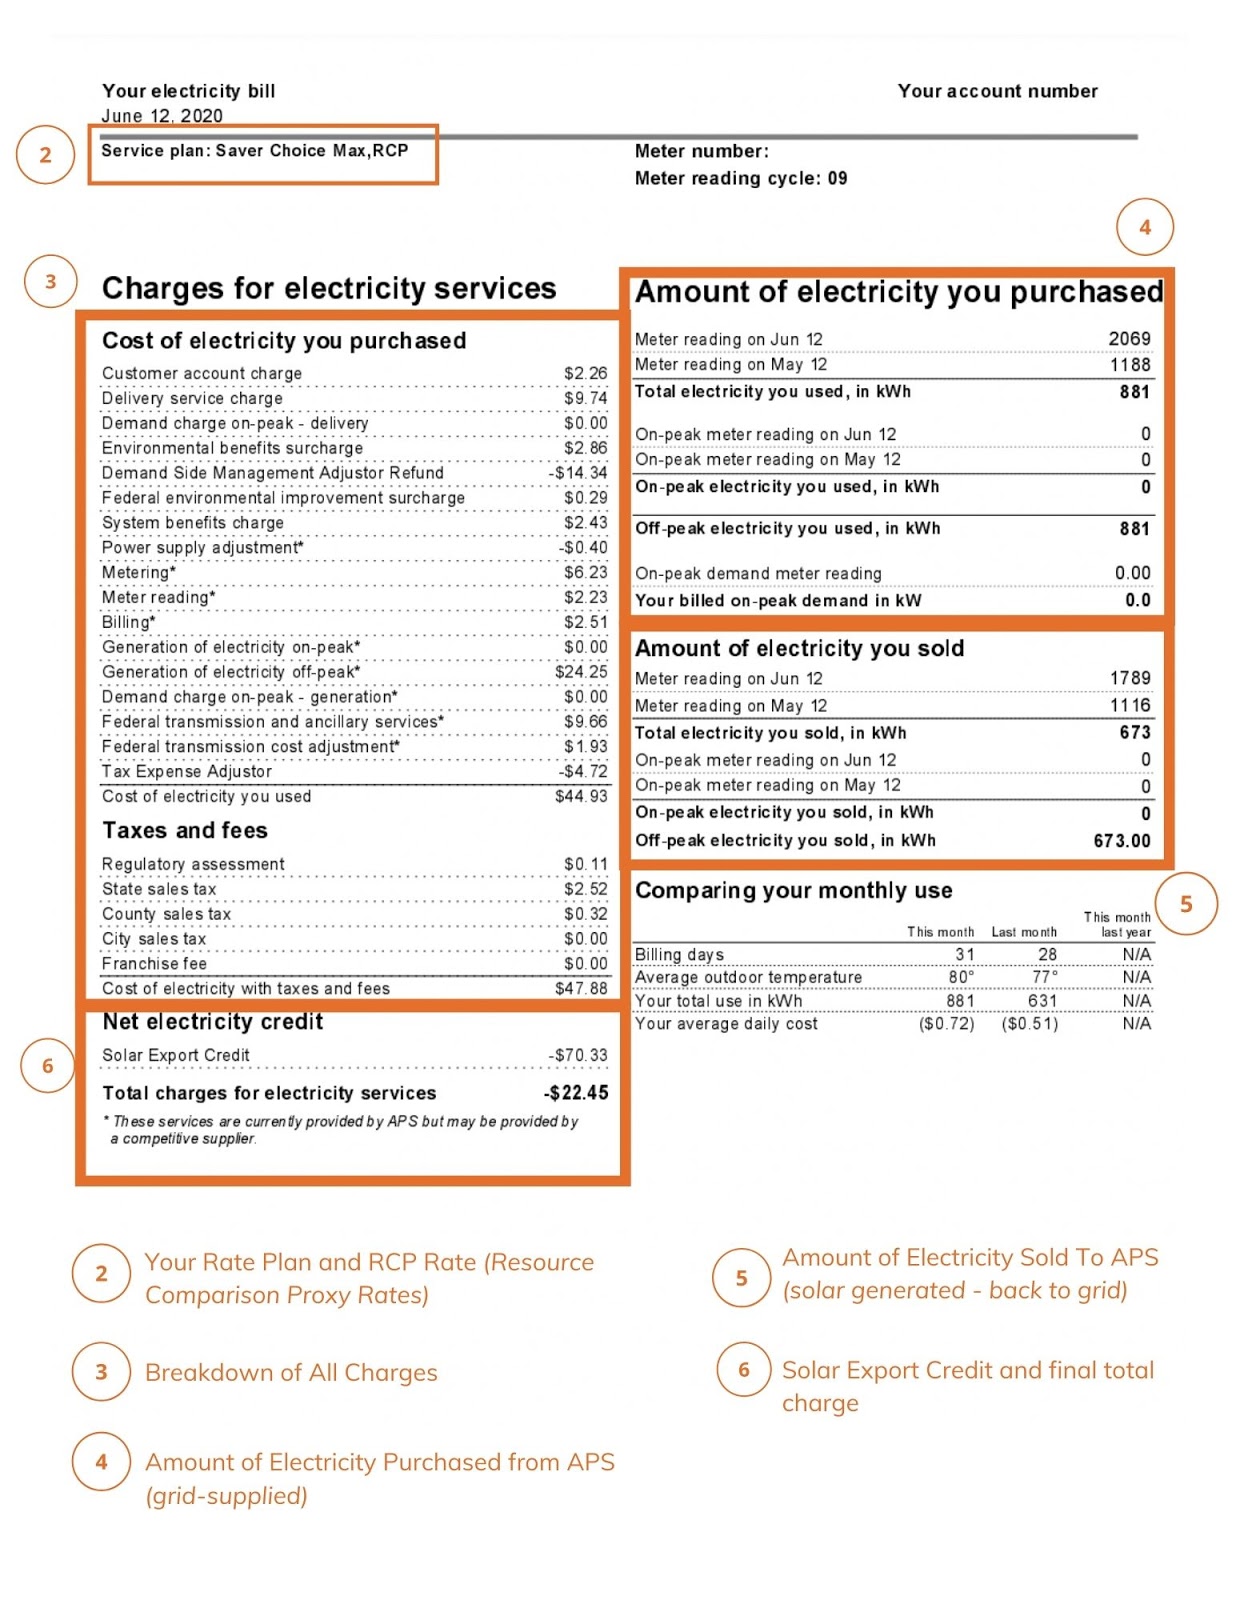 APS Electric Bill Page 3 breakdown